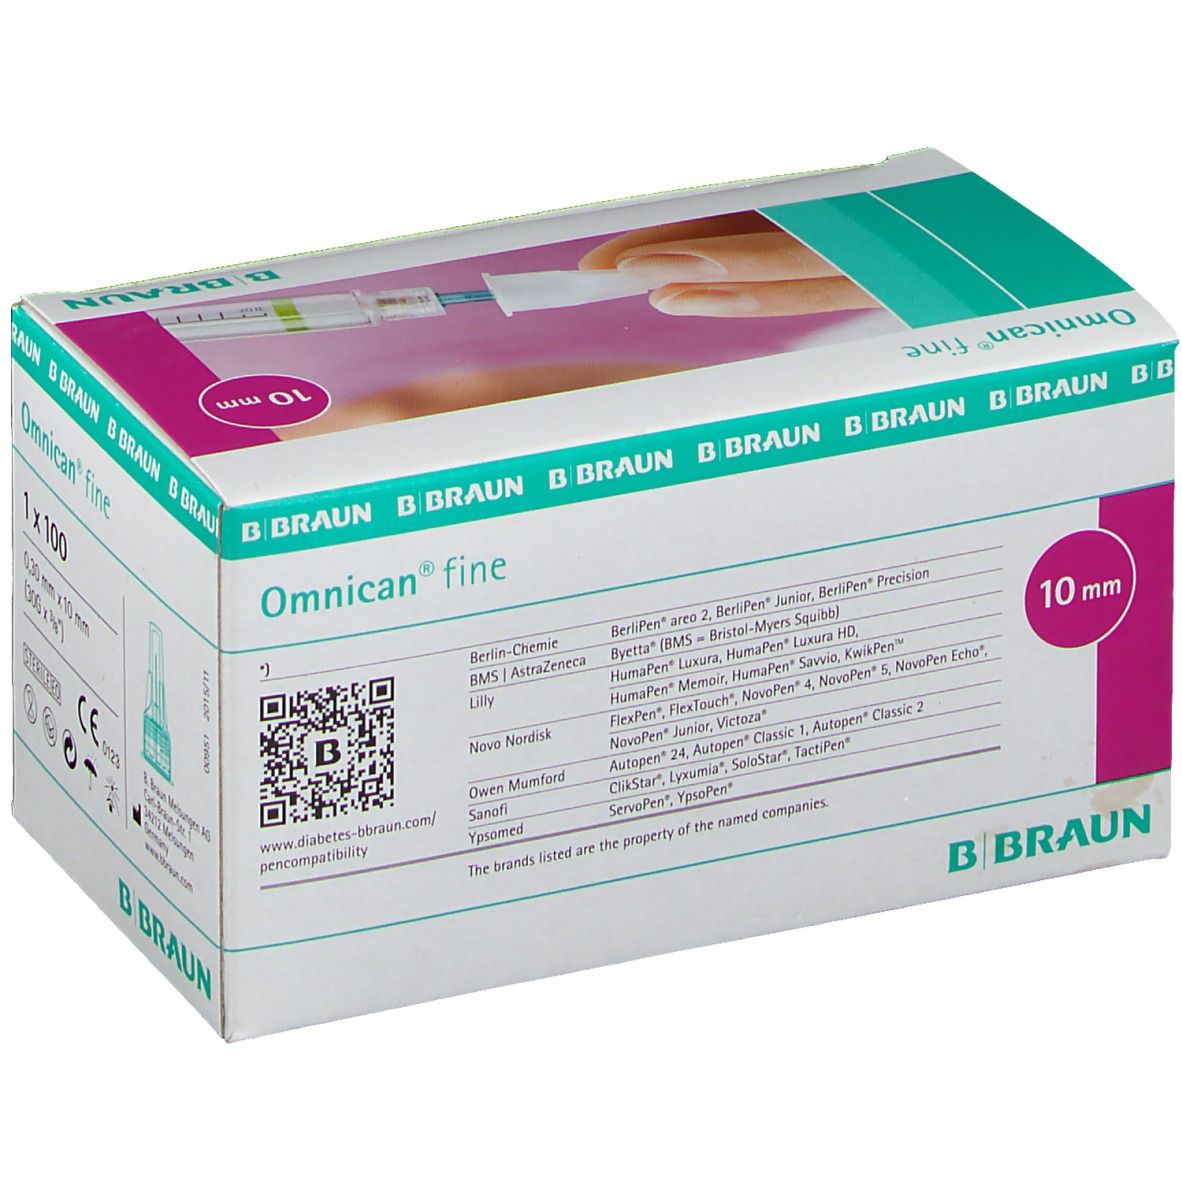 Omnican® fine Penkanüle 30G 0,30 x 10mm